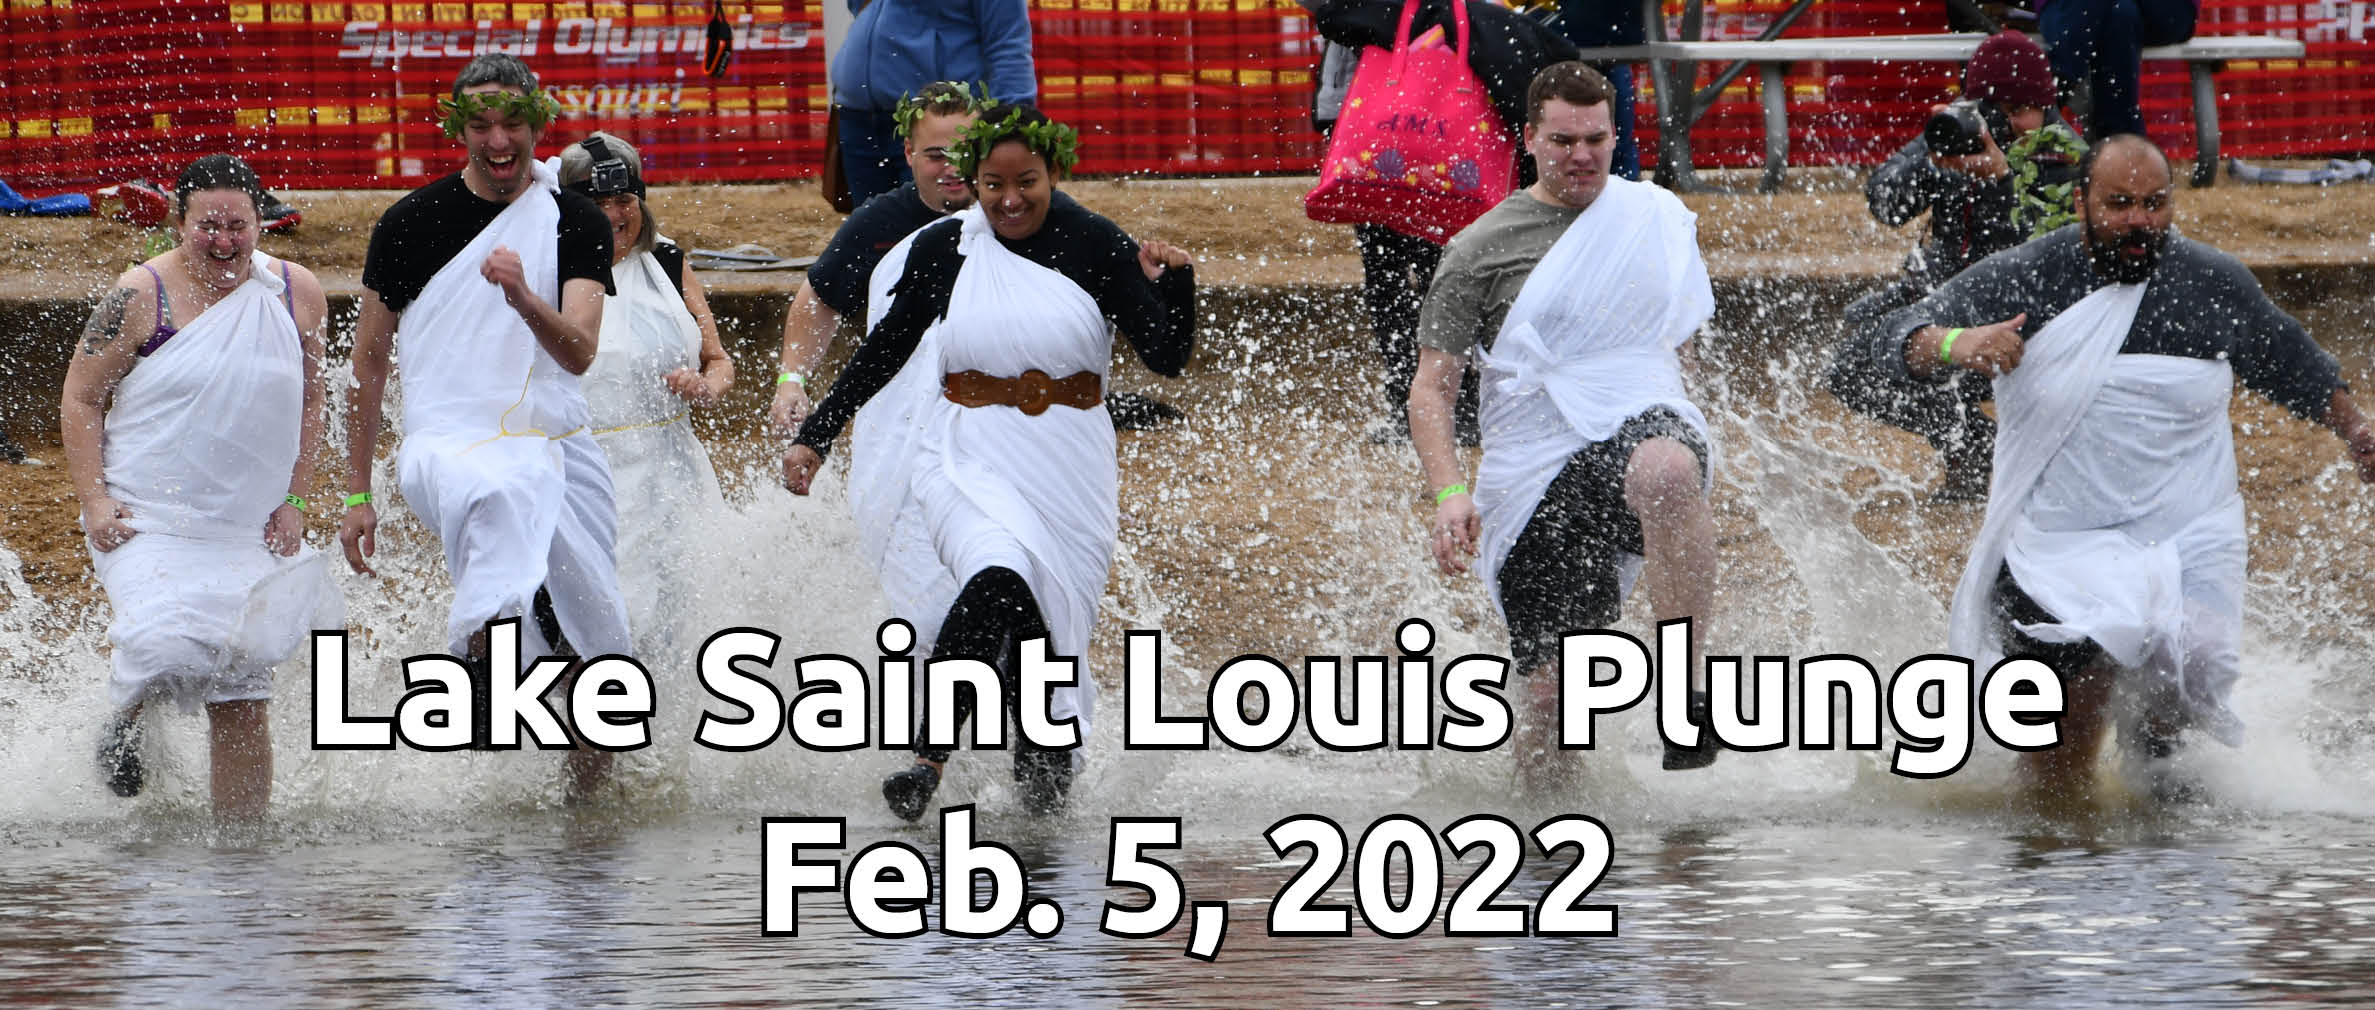 2022 Lake Saint Louis Plunge logo banner